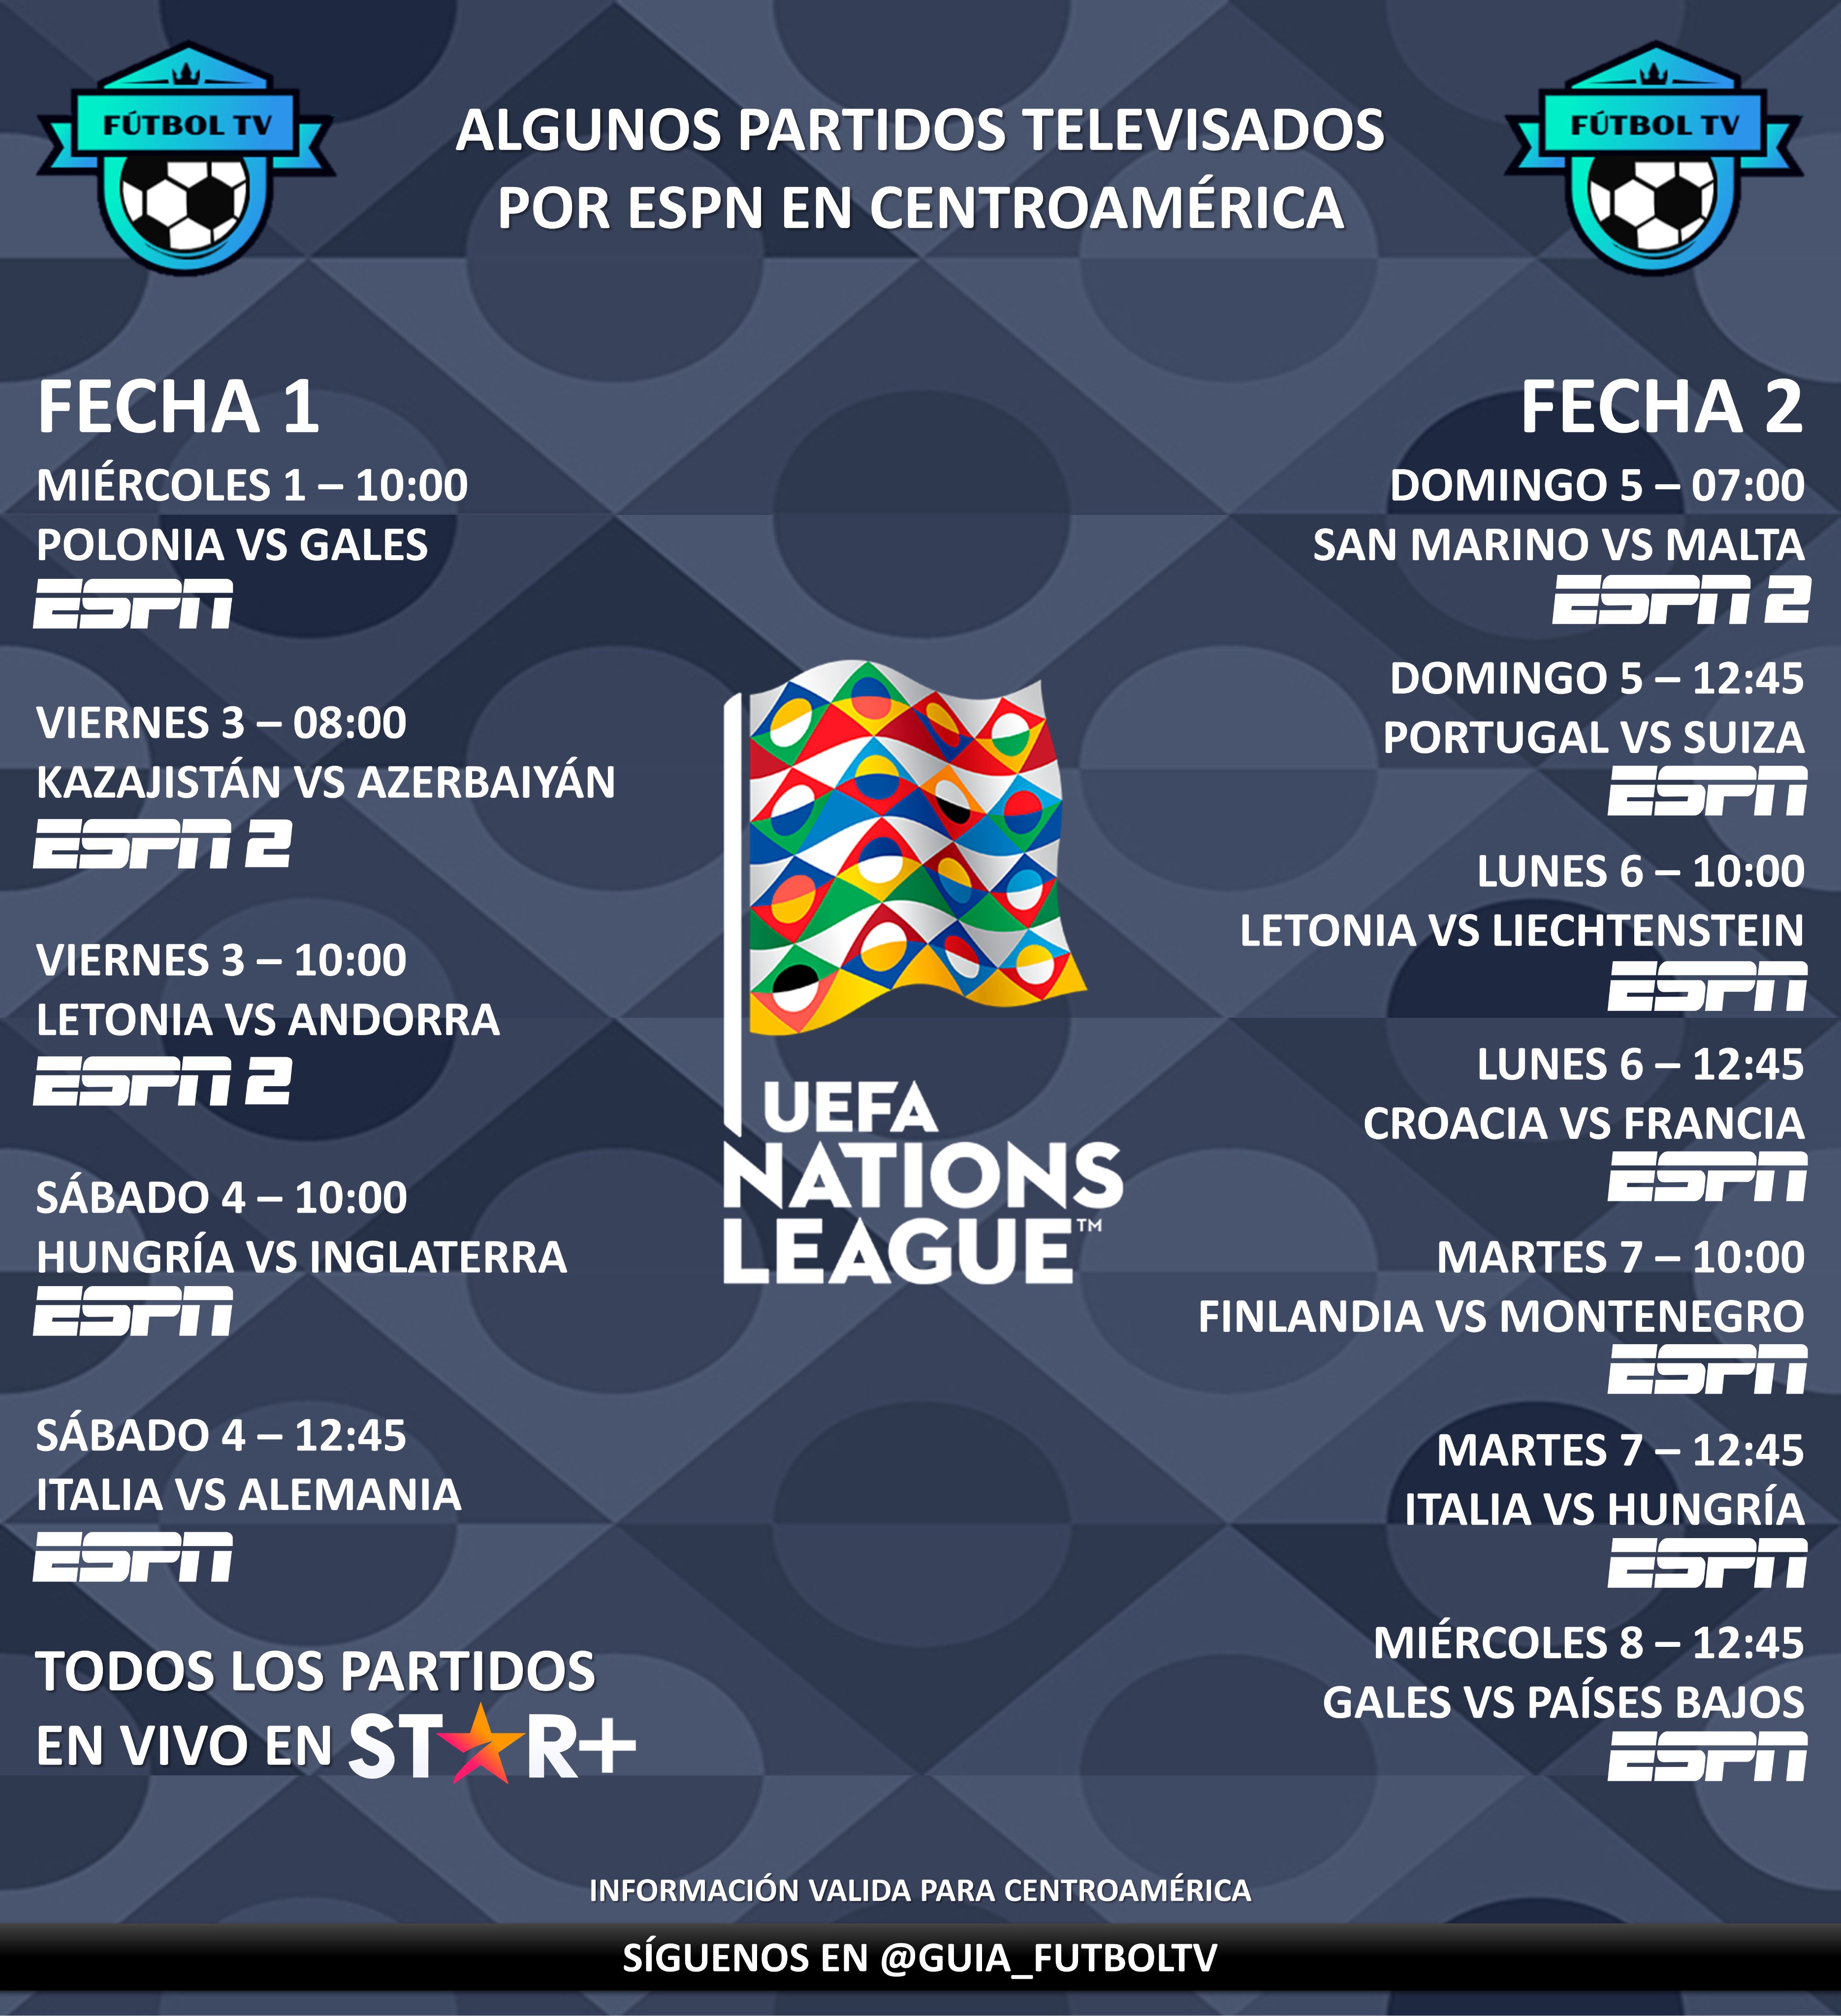 LaGuíaDelMundial 🇶🇦 on Twitter: "Les presentamos partidos televisados de la UEFA Nations League (Fechas 1 y 2) por ESPN en Centroamérica. Recordemos que todos los partidos estarán disponibles en @StarPlusLA (algunos